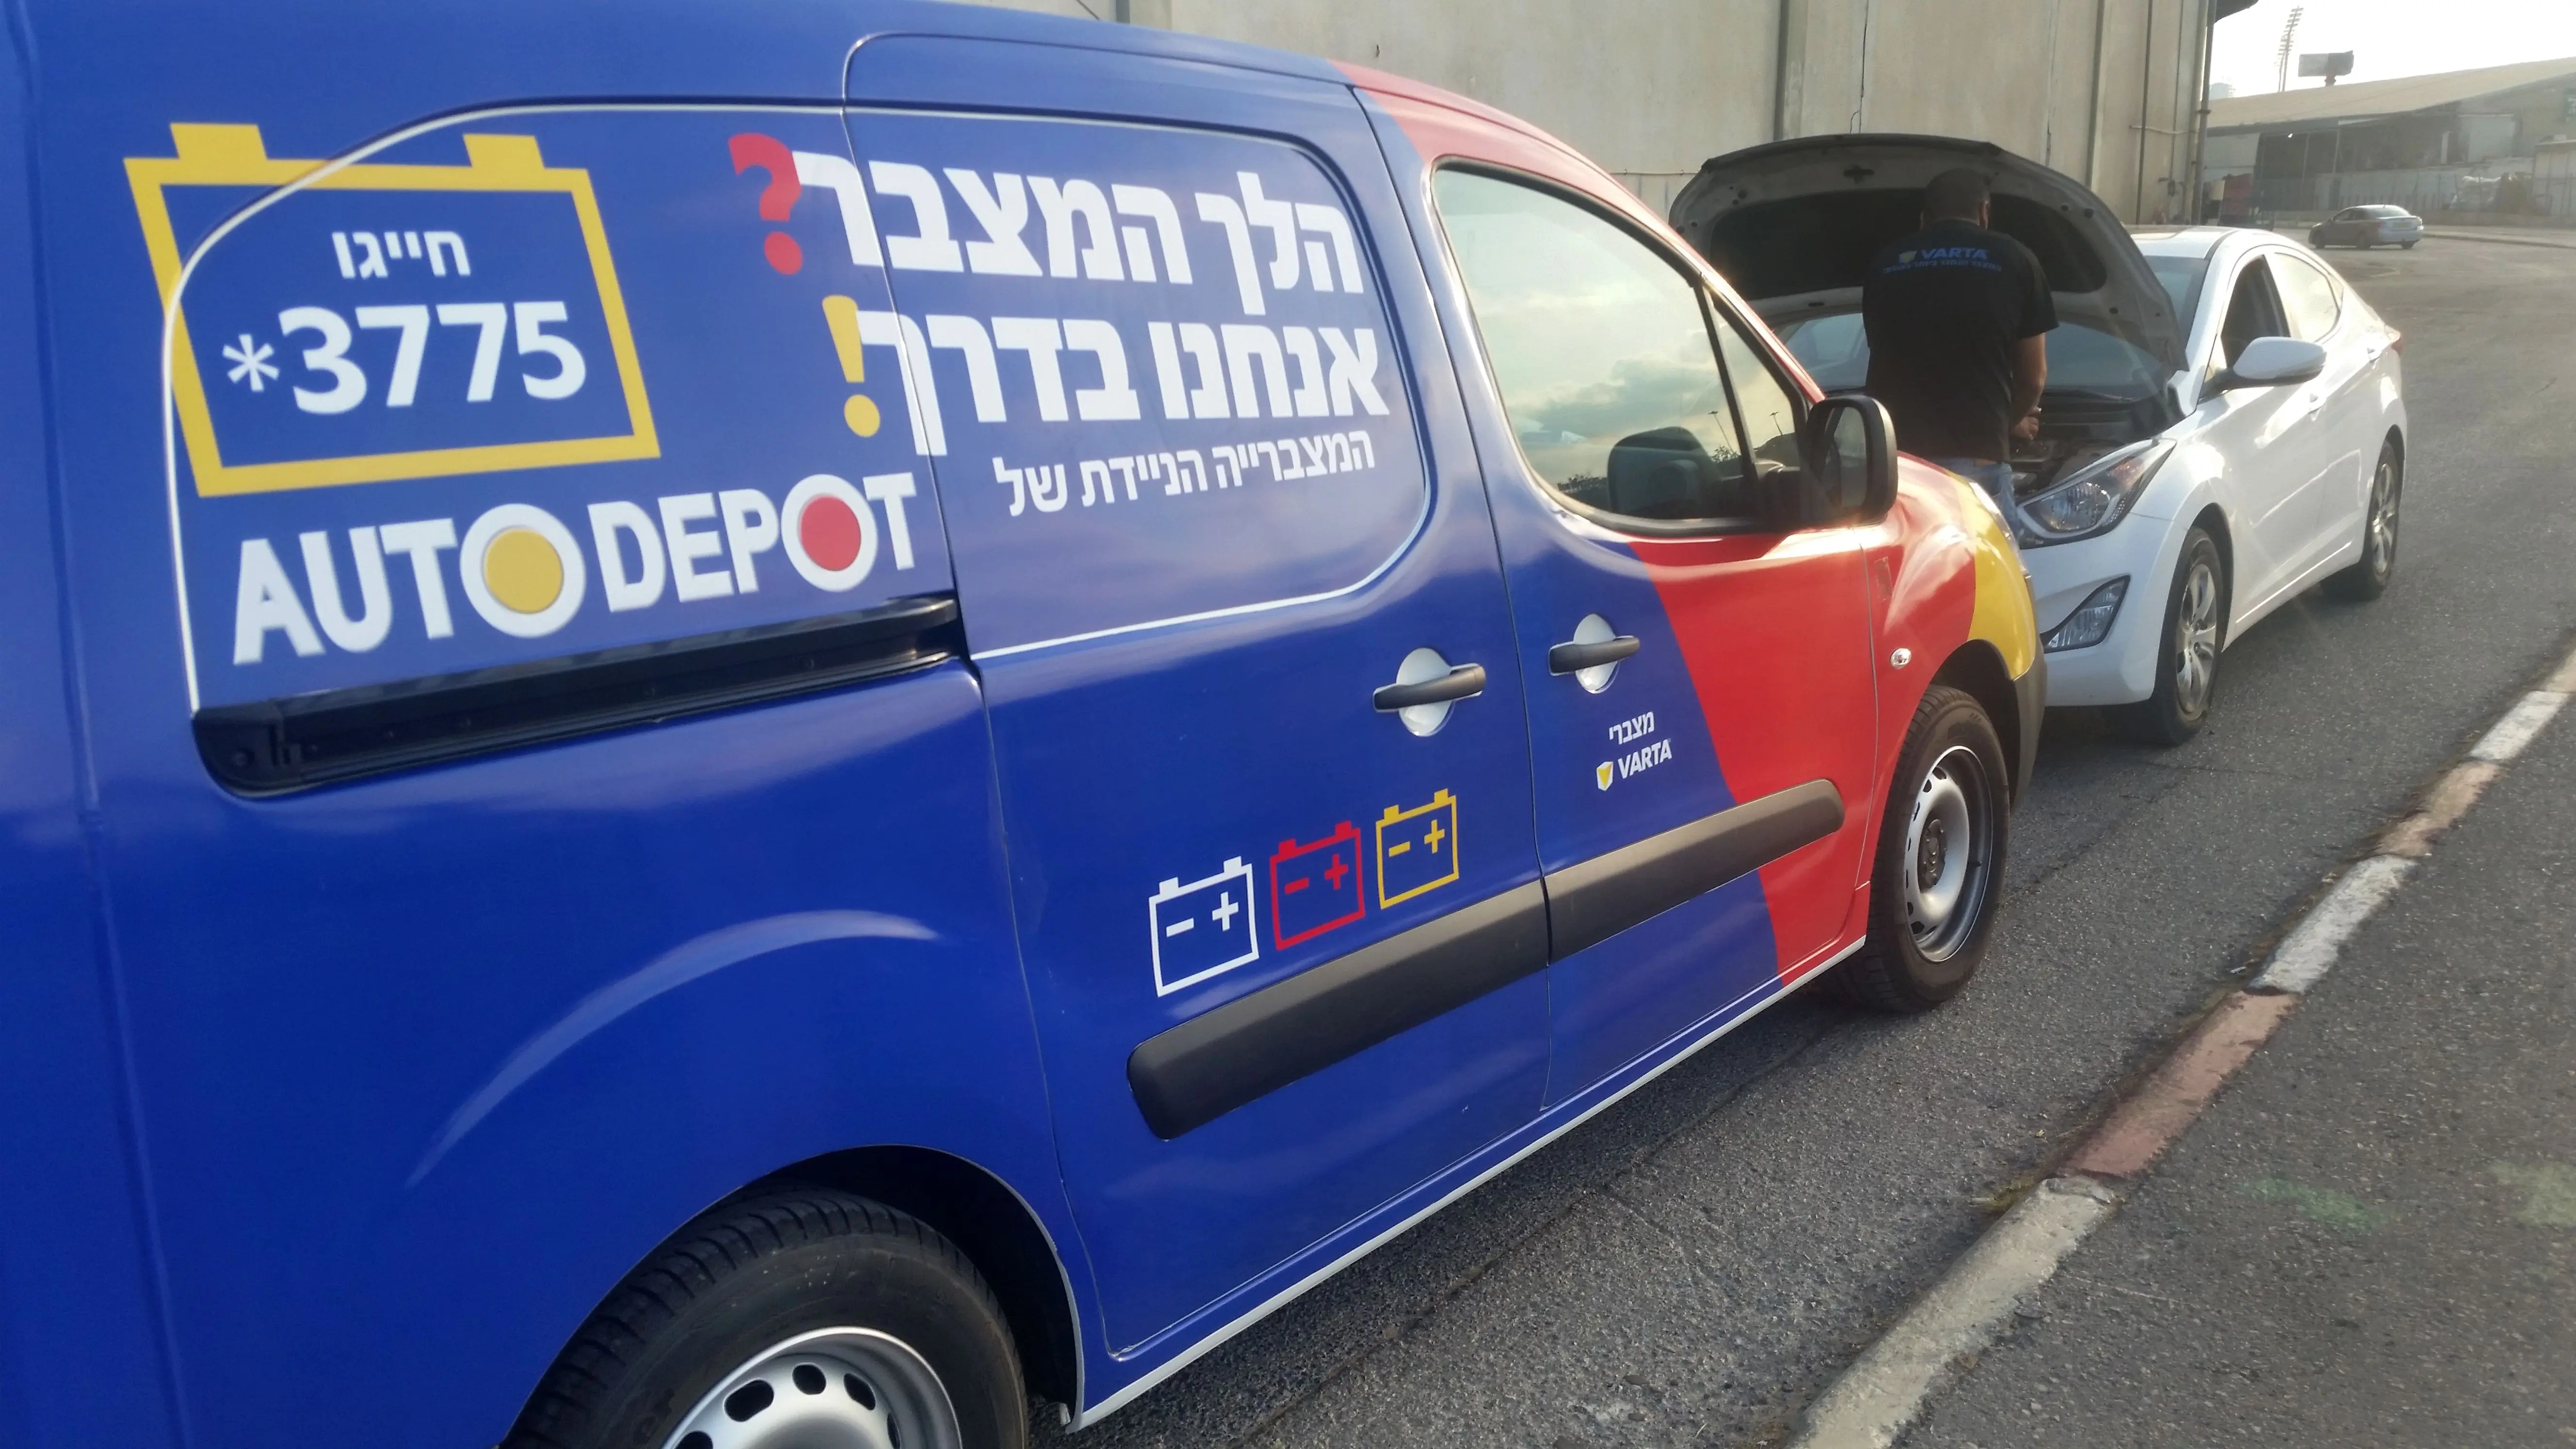 מכונית שירות של רשת אוטודיפו בישראל